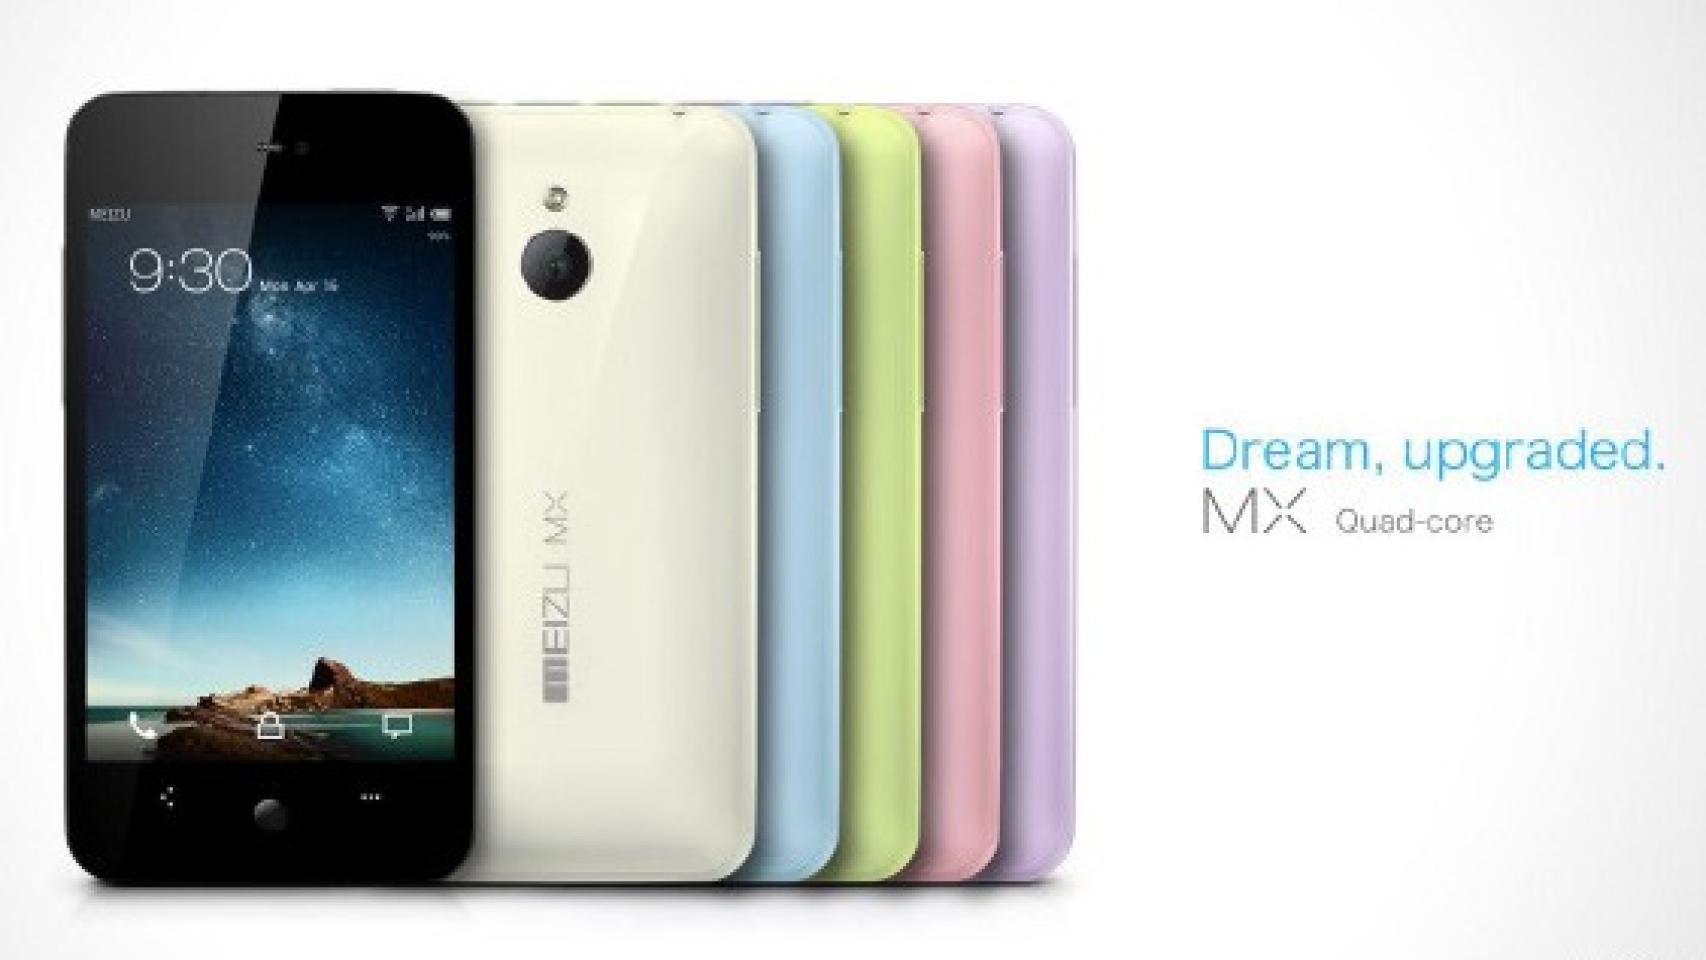 Nuevo Meizu MX Quadcore en múltiples colores con sabor Android 4.0